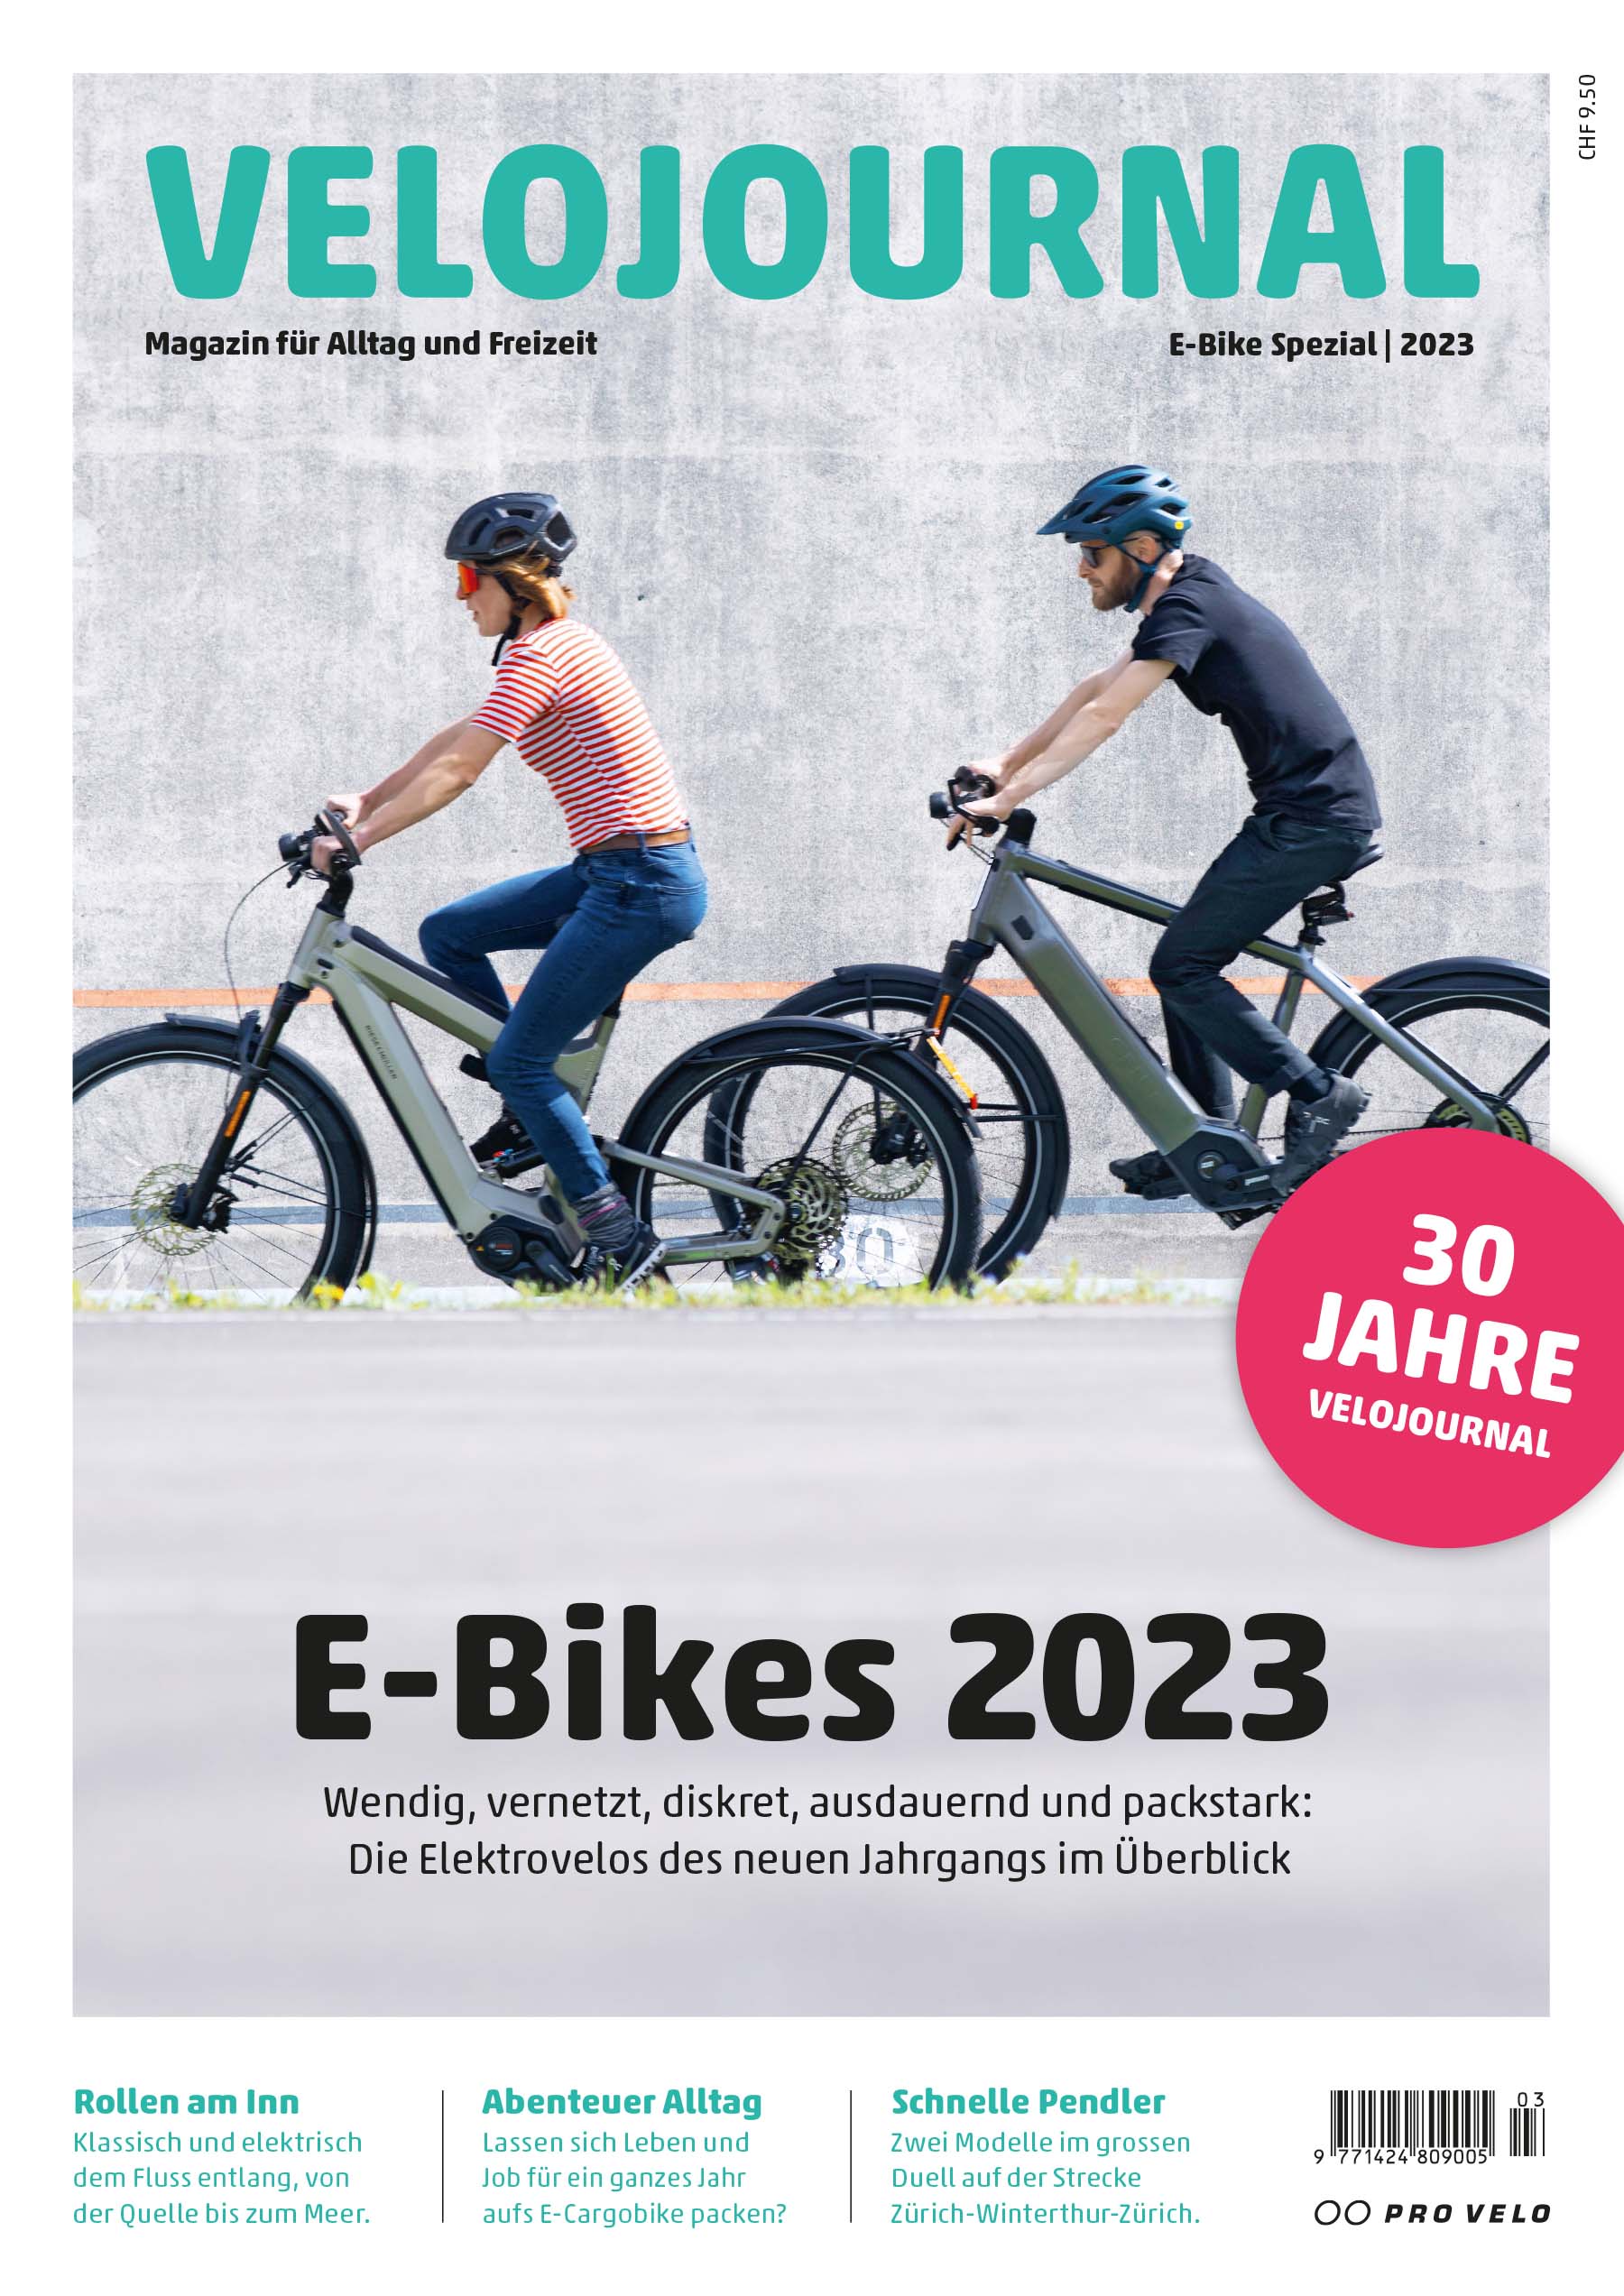 Alles über E-Bikes. Velojournal E-Bike Spezial 2023.